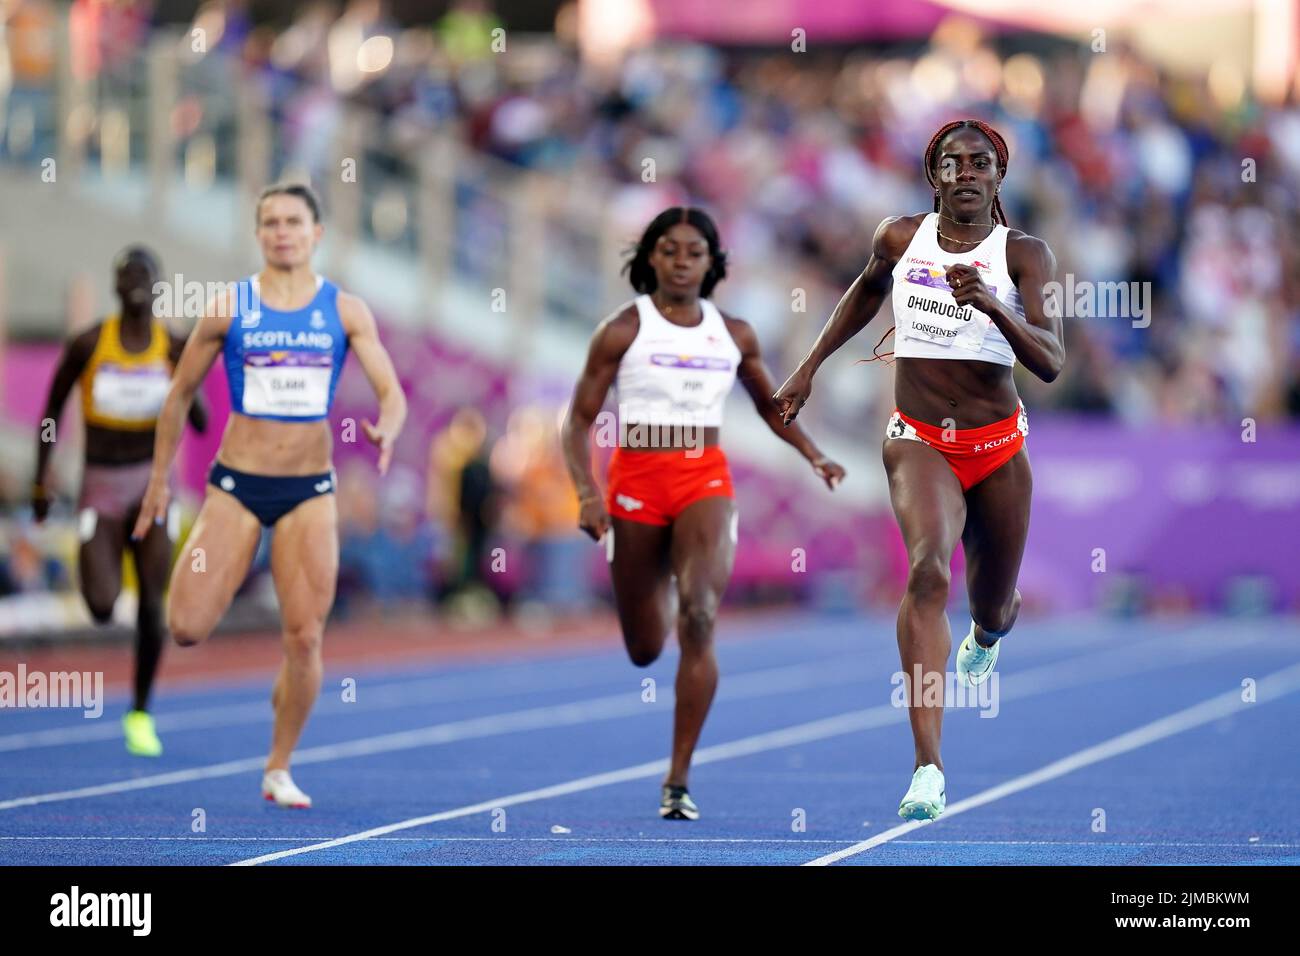 Die Engländerin Victoria Ohuruogu (rechts) ist während des Halbfinales der Frauen 400m 1 im Alexander Stadium am achten Tag der Commonwealth Games 2022 in Birmingham in Aktion. Bilddatum: Freitag, 5. August 2022. Stockfoto